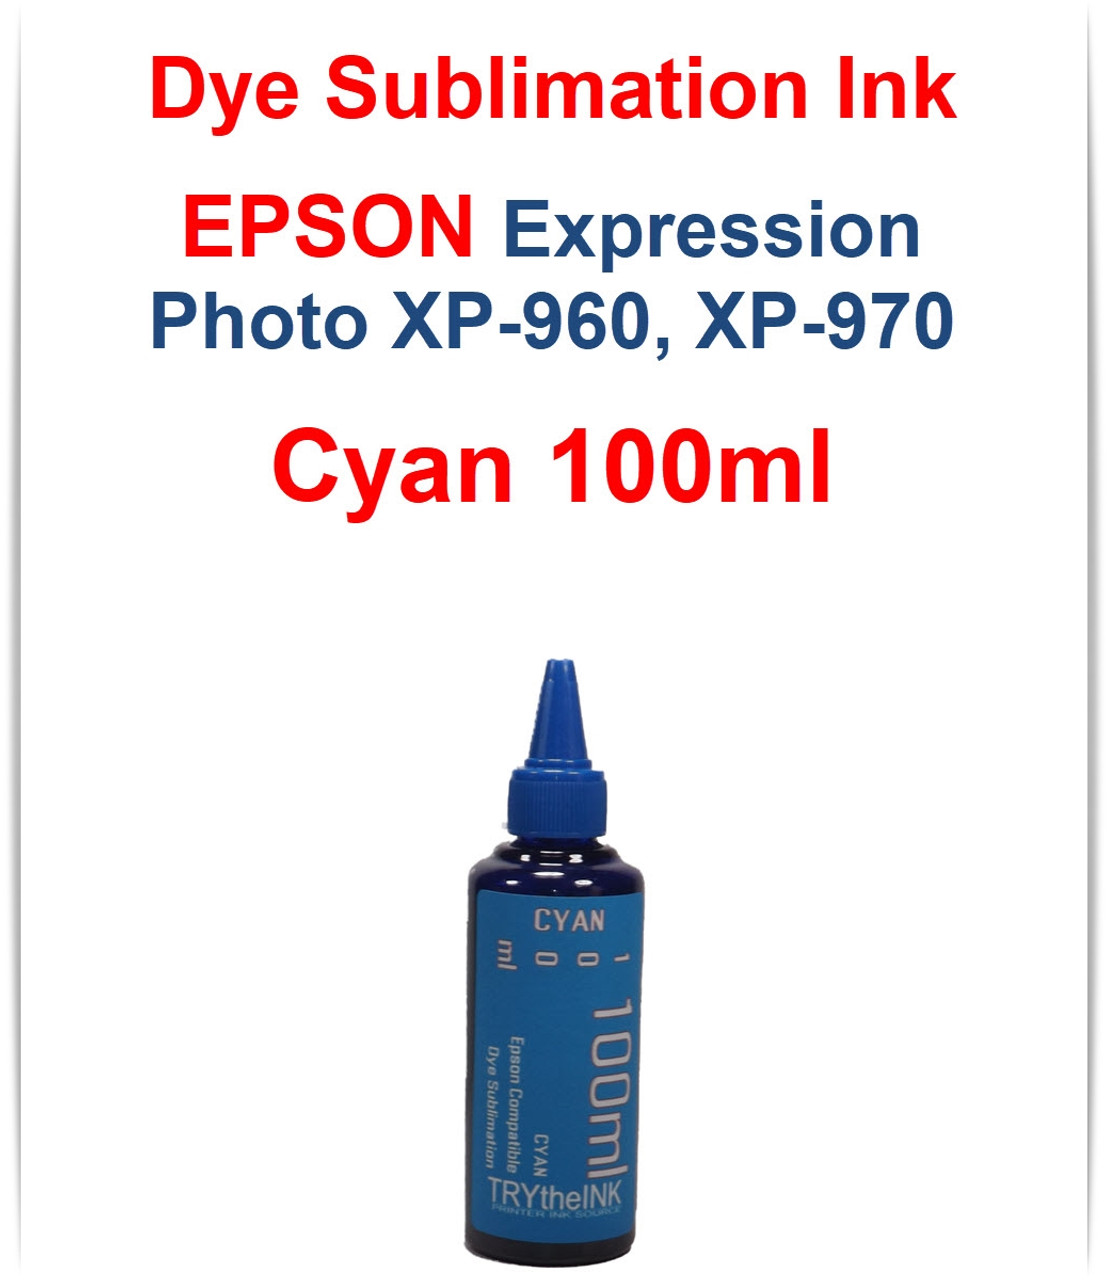 Cyan 100ml bottle Dye Sublimation Ink 
Epson Expression Photo XP-960 XP-970 Printers